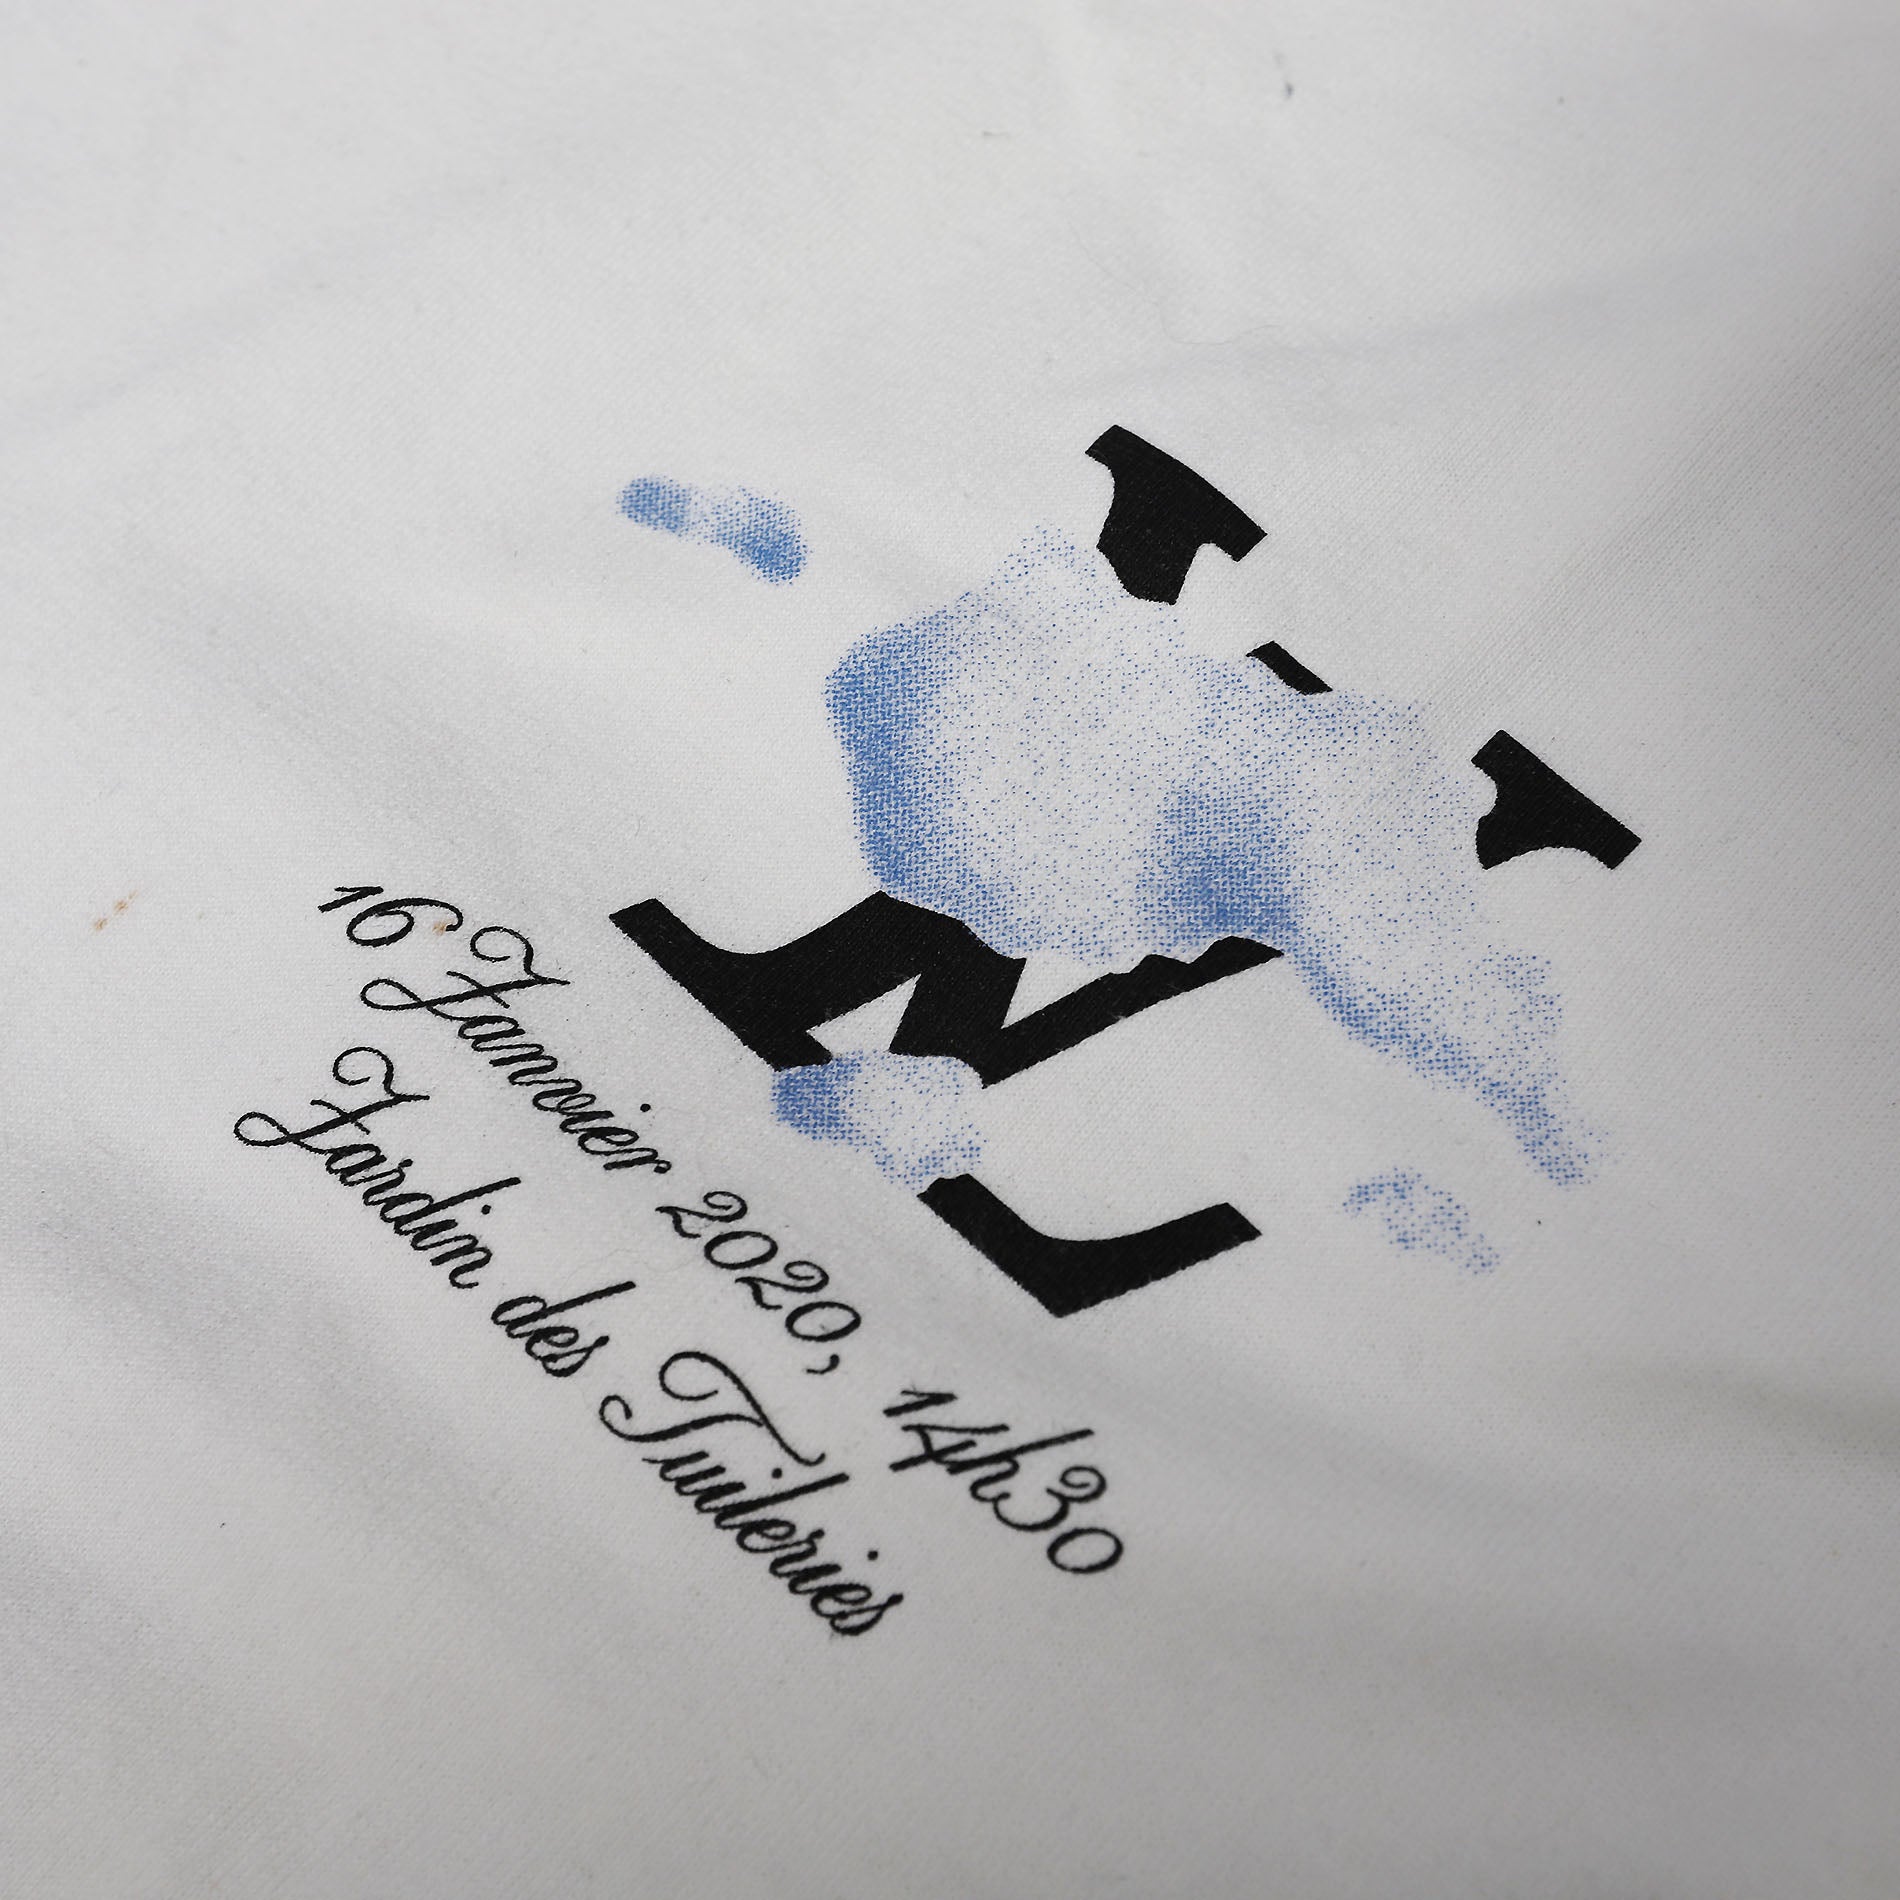 Louis Vuitton Cloud Collection T Shirts